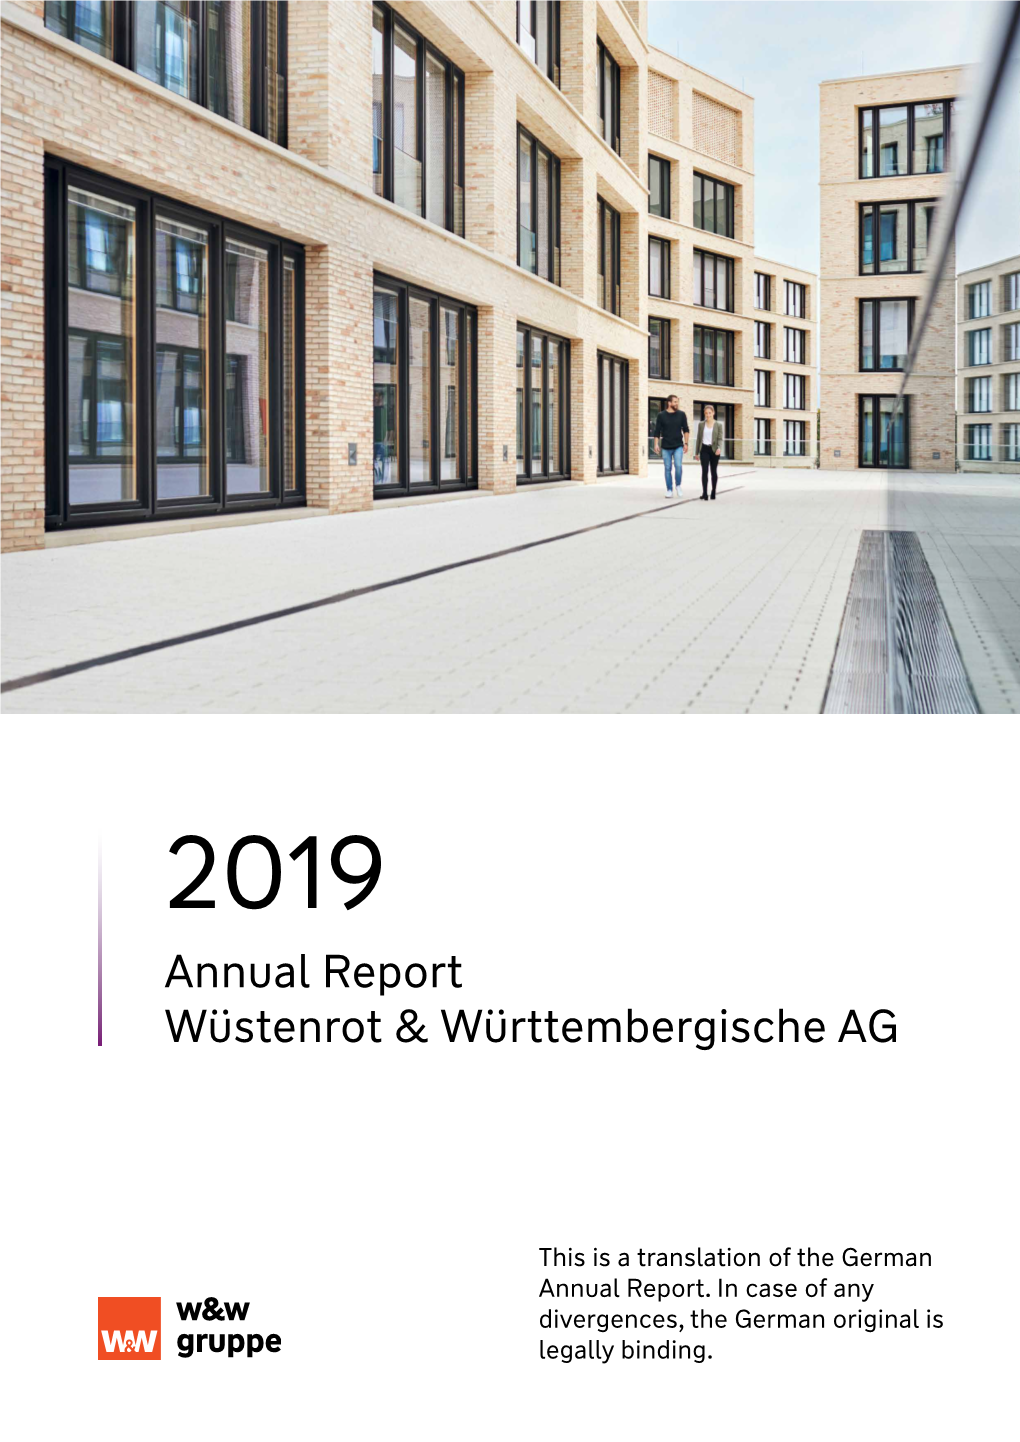 Annual Report Wüstenrot & Württembergische AG